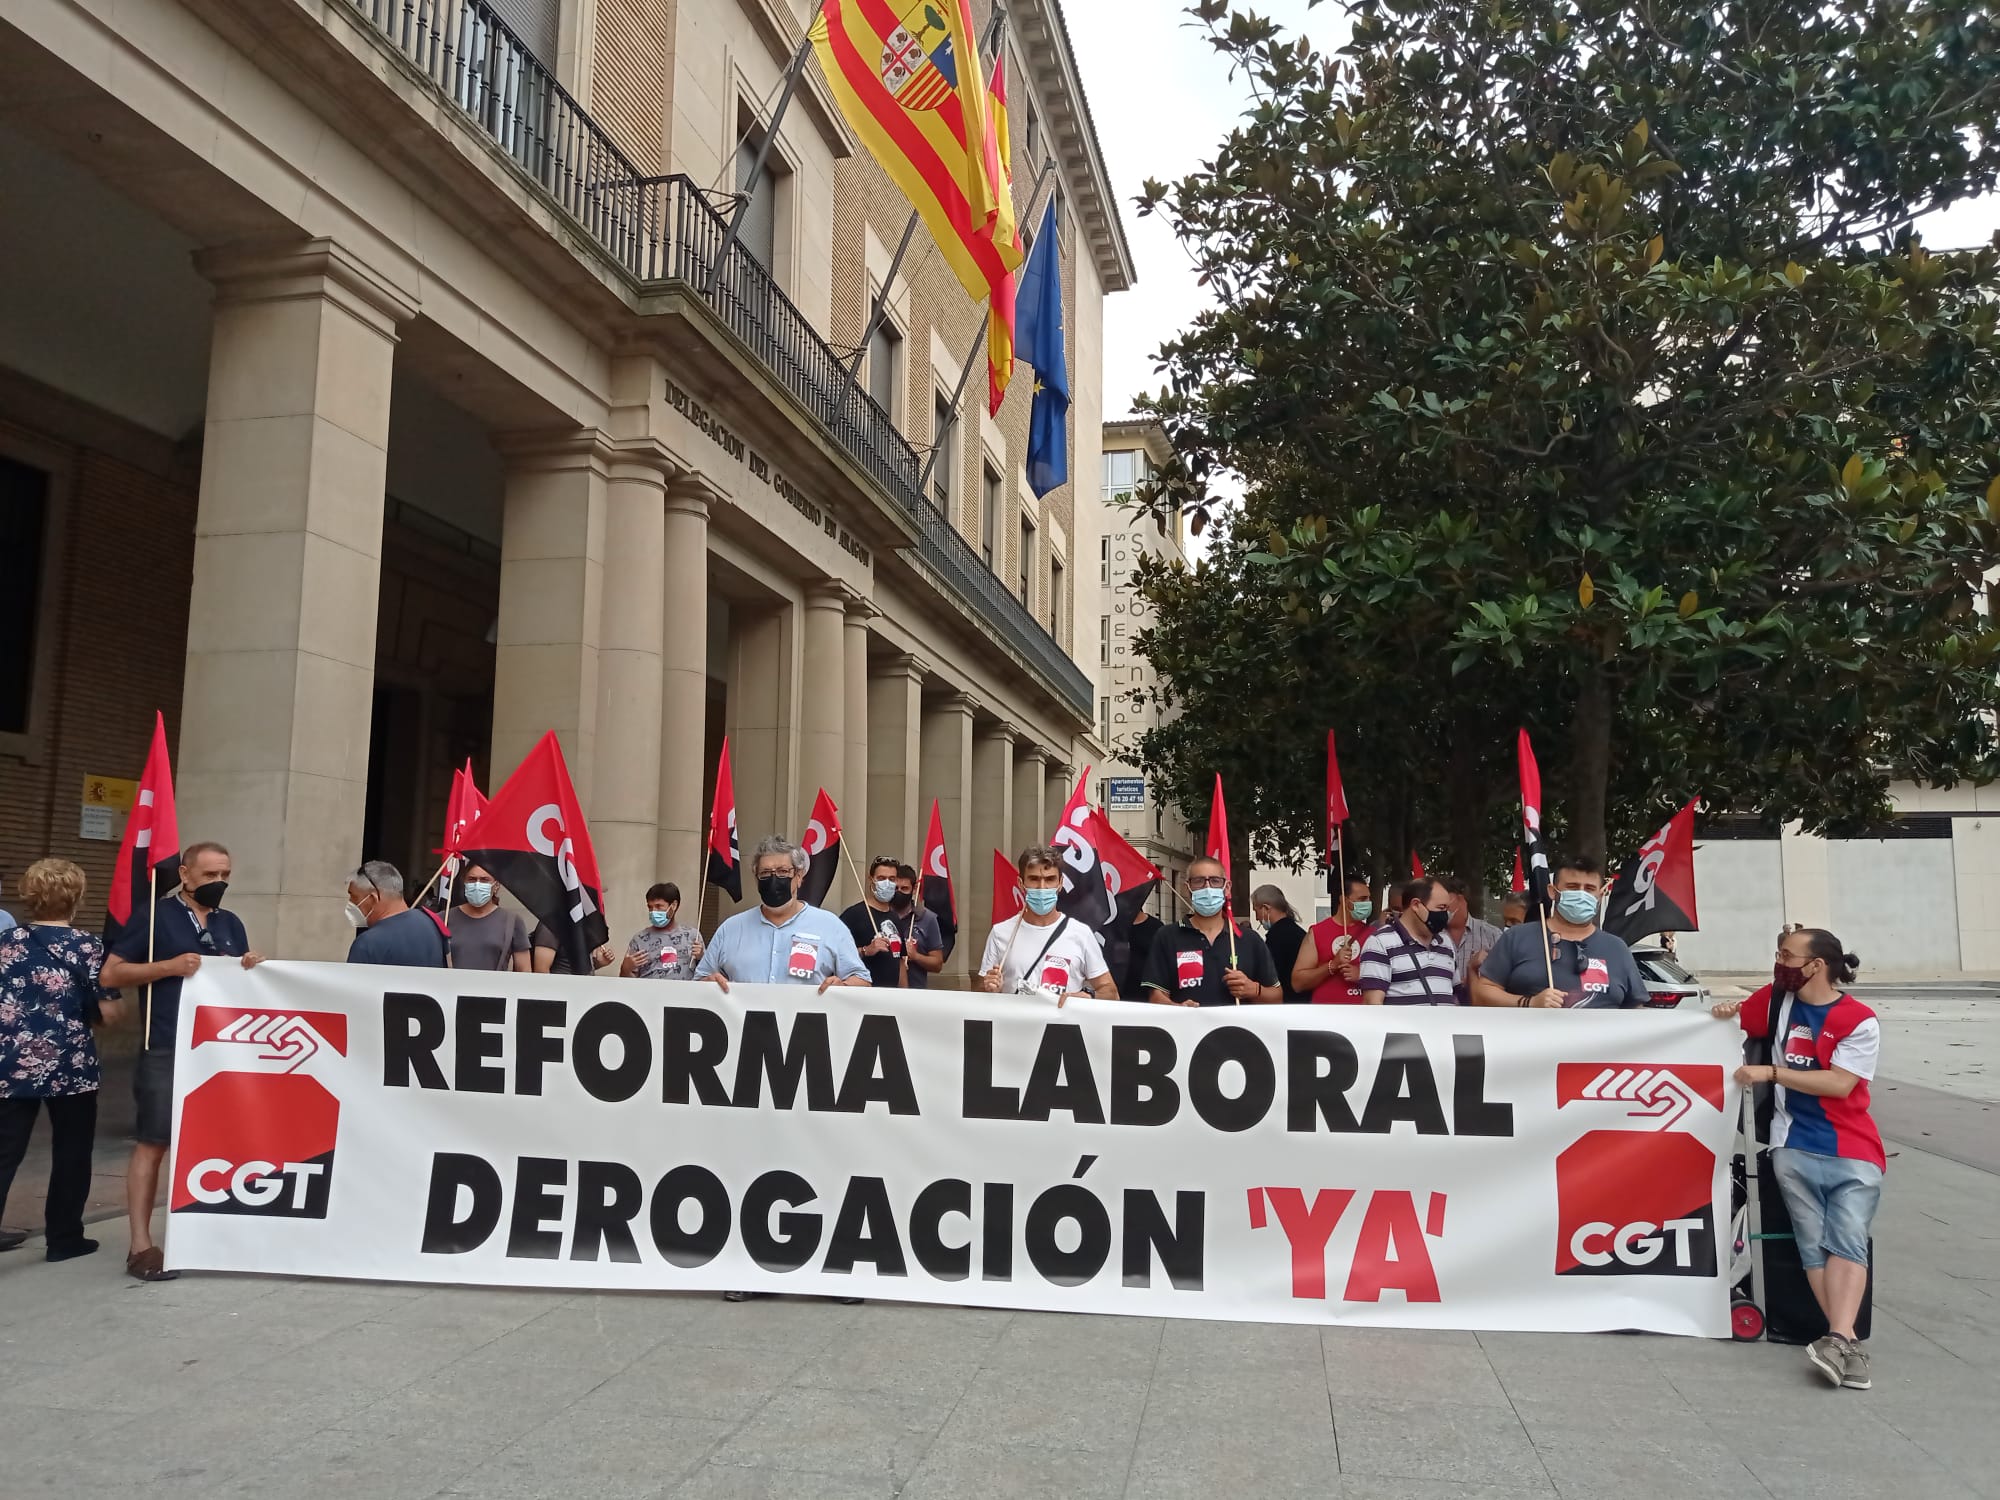 CGT de nuevo en las calles por la derogación de las reformas laborales